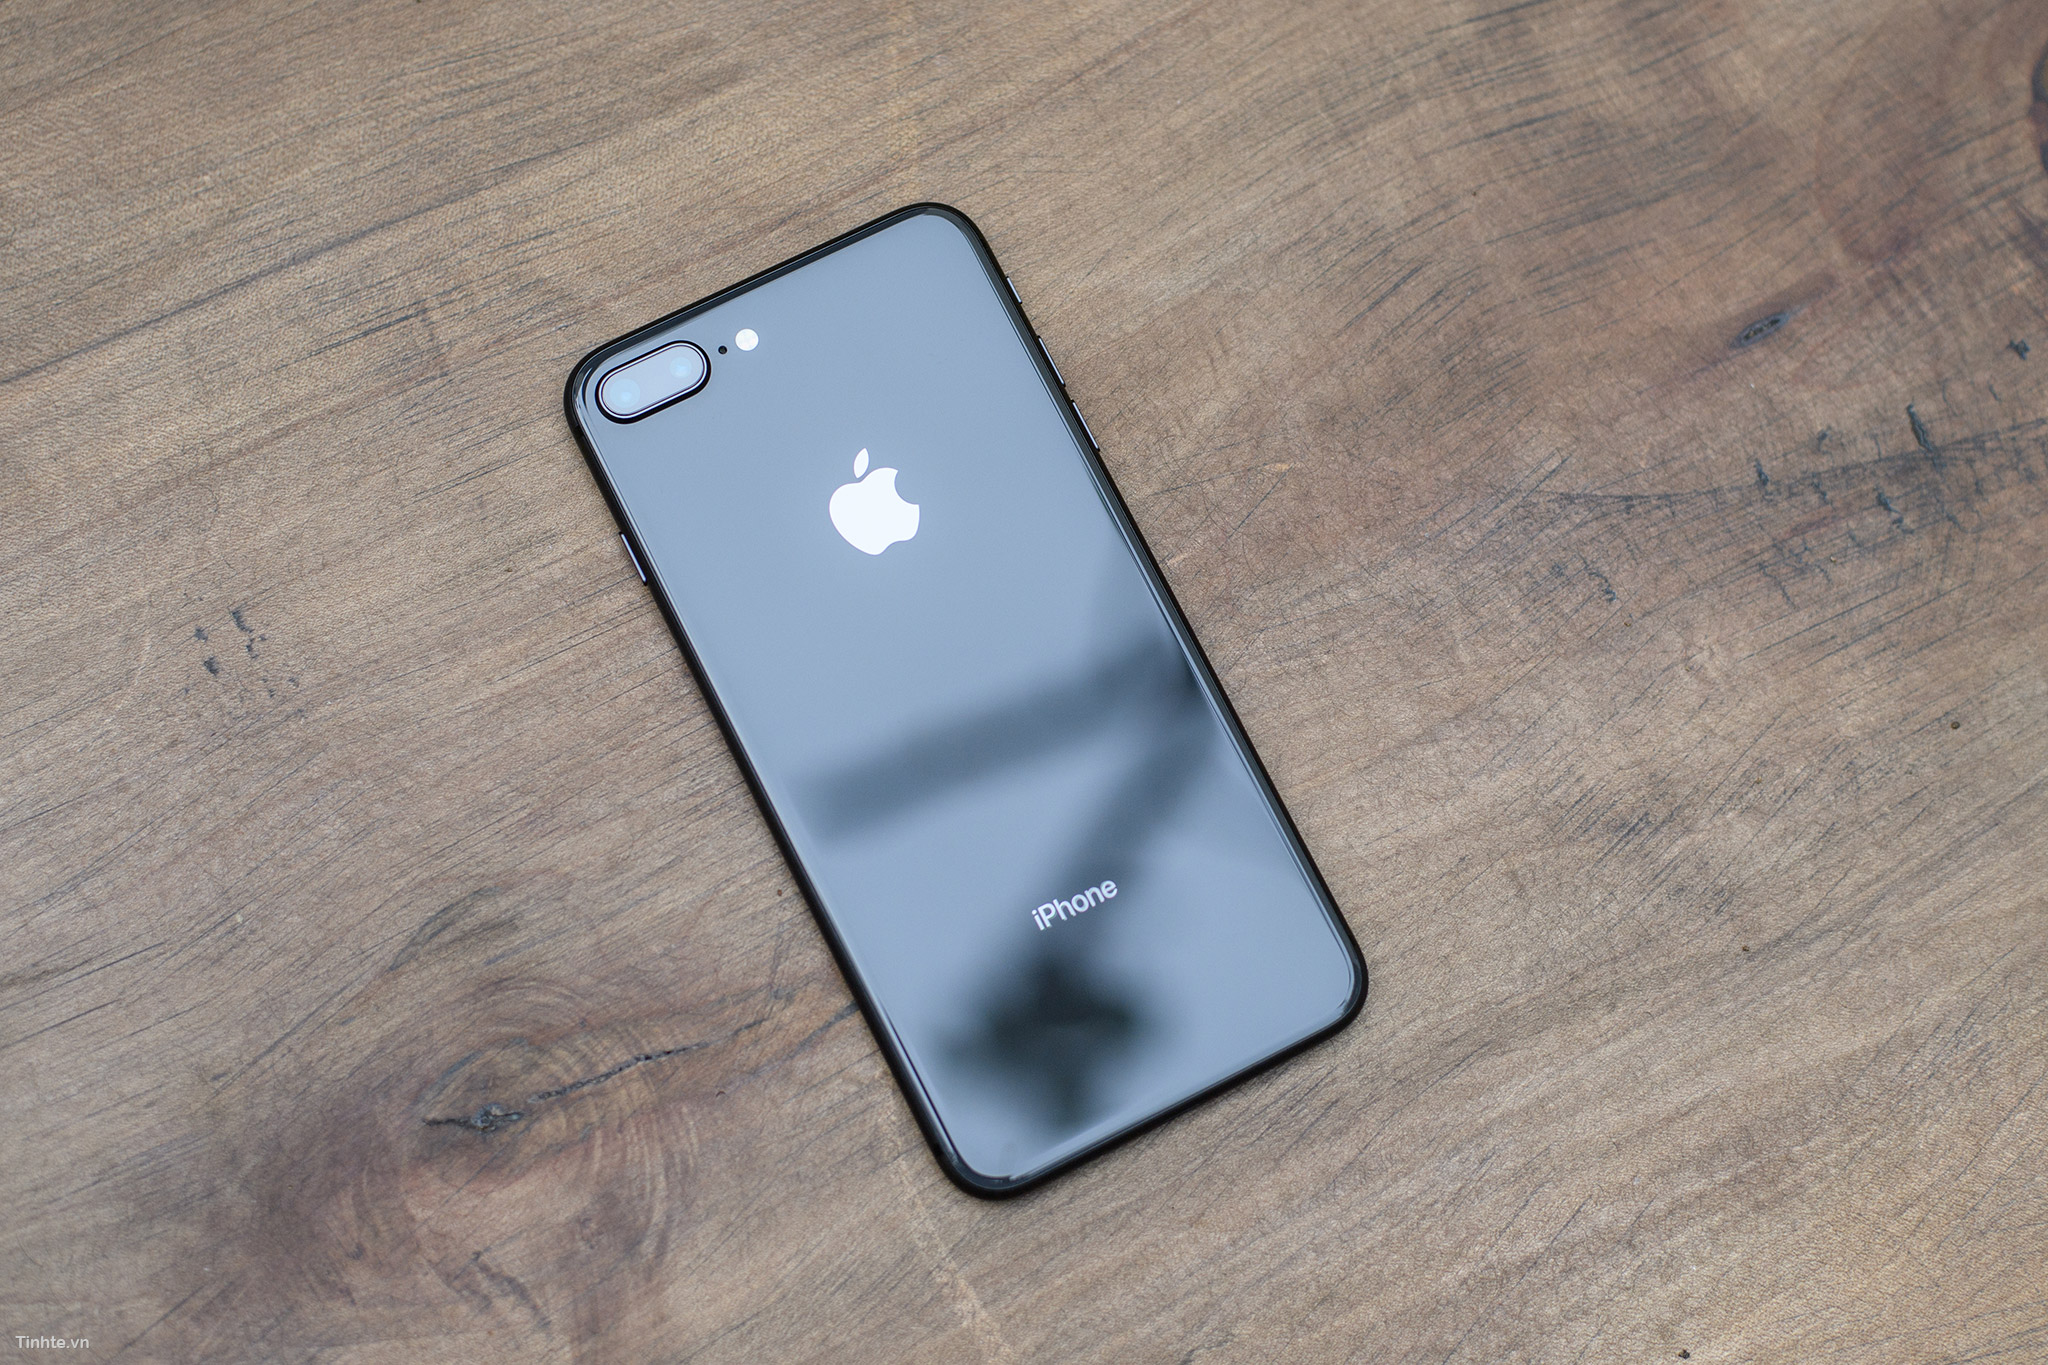 iPhone 8/8 Plus Space Gray trang bị cho mình một màn hình rực rỡ và chức năng tiên tiến. Màu sắc sang trọng và quý phái cùng với hiệu năng vượt trội chắc chắn sẽ đáp ứng được nhu cầu của những người dùng khó tính nhất. Hãy xem những hình ảnh đẹp mê hoặc với chiếc iPhone 8/8 Plus Space Gray.